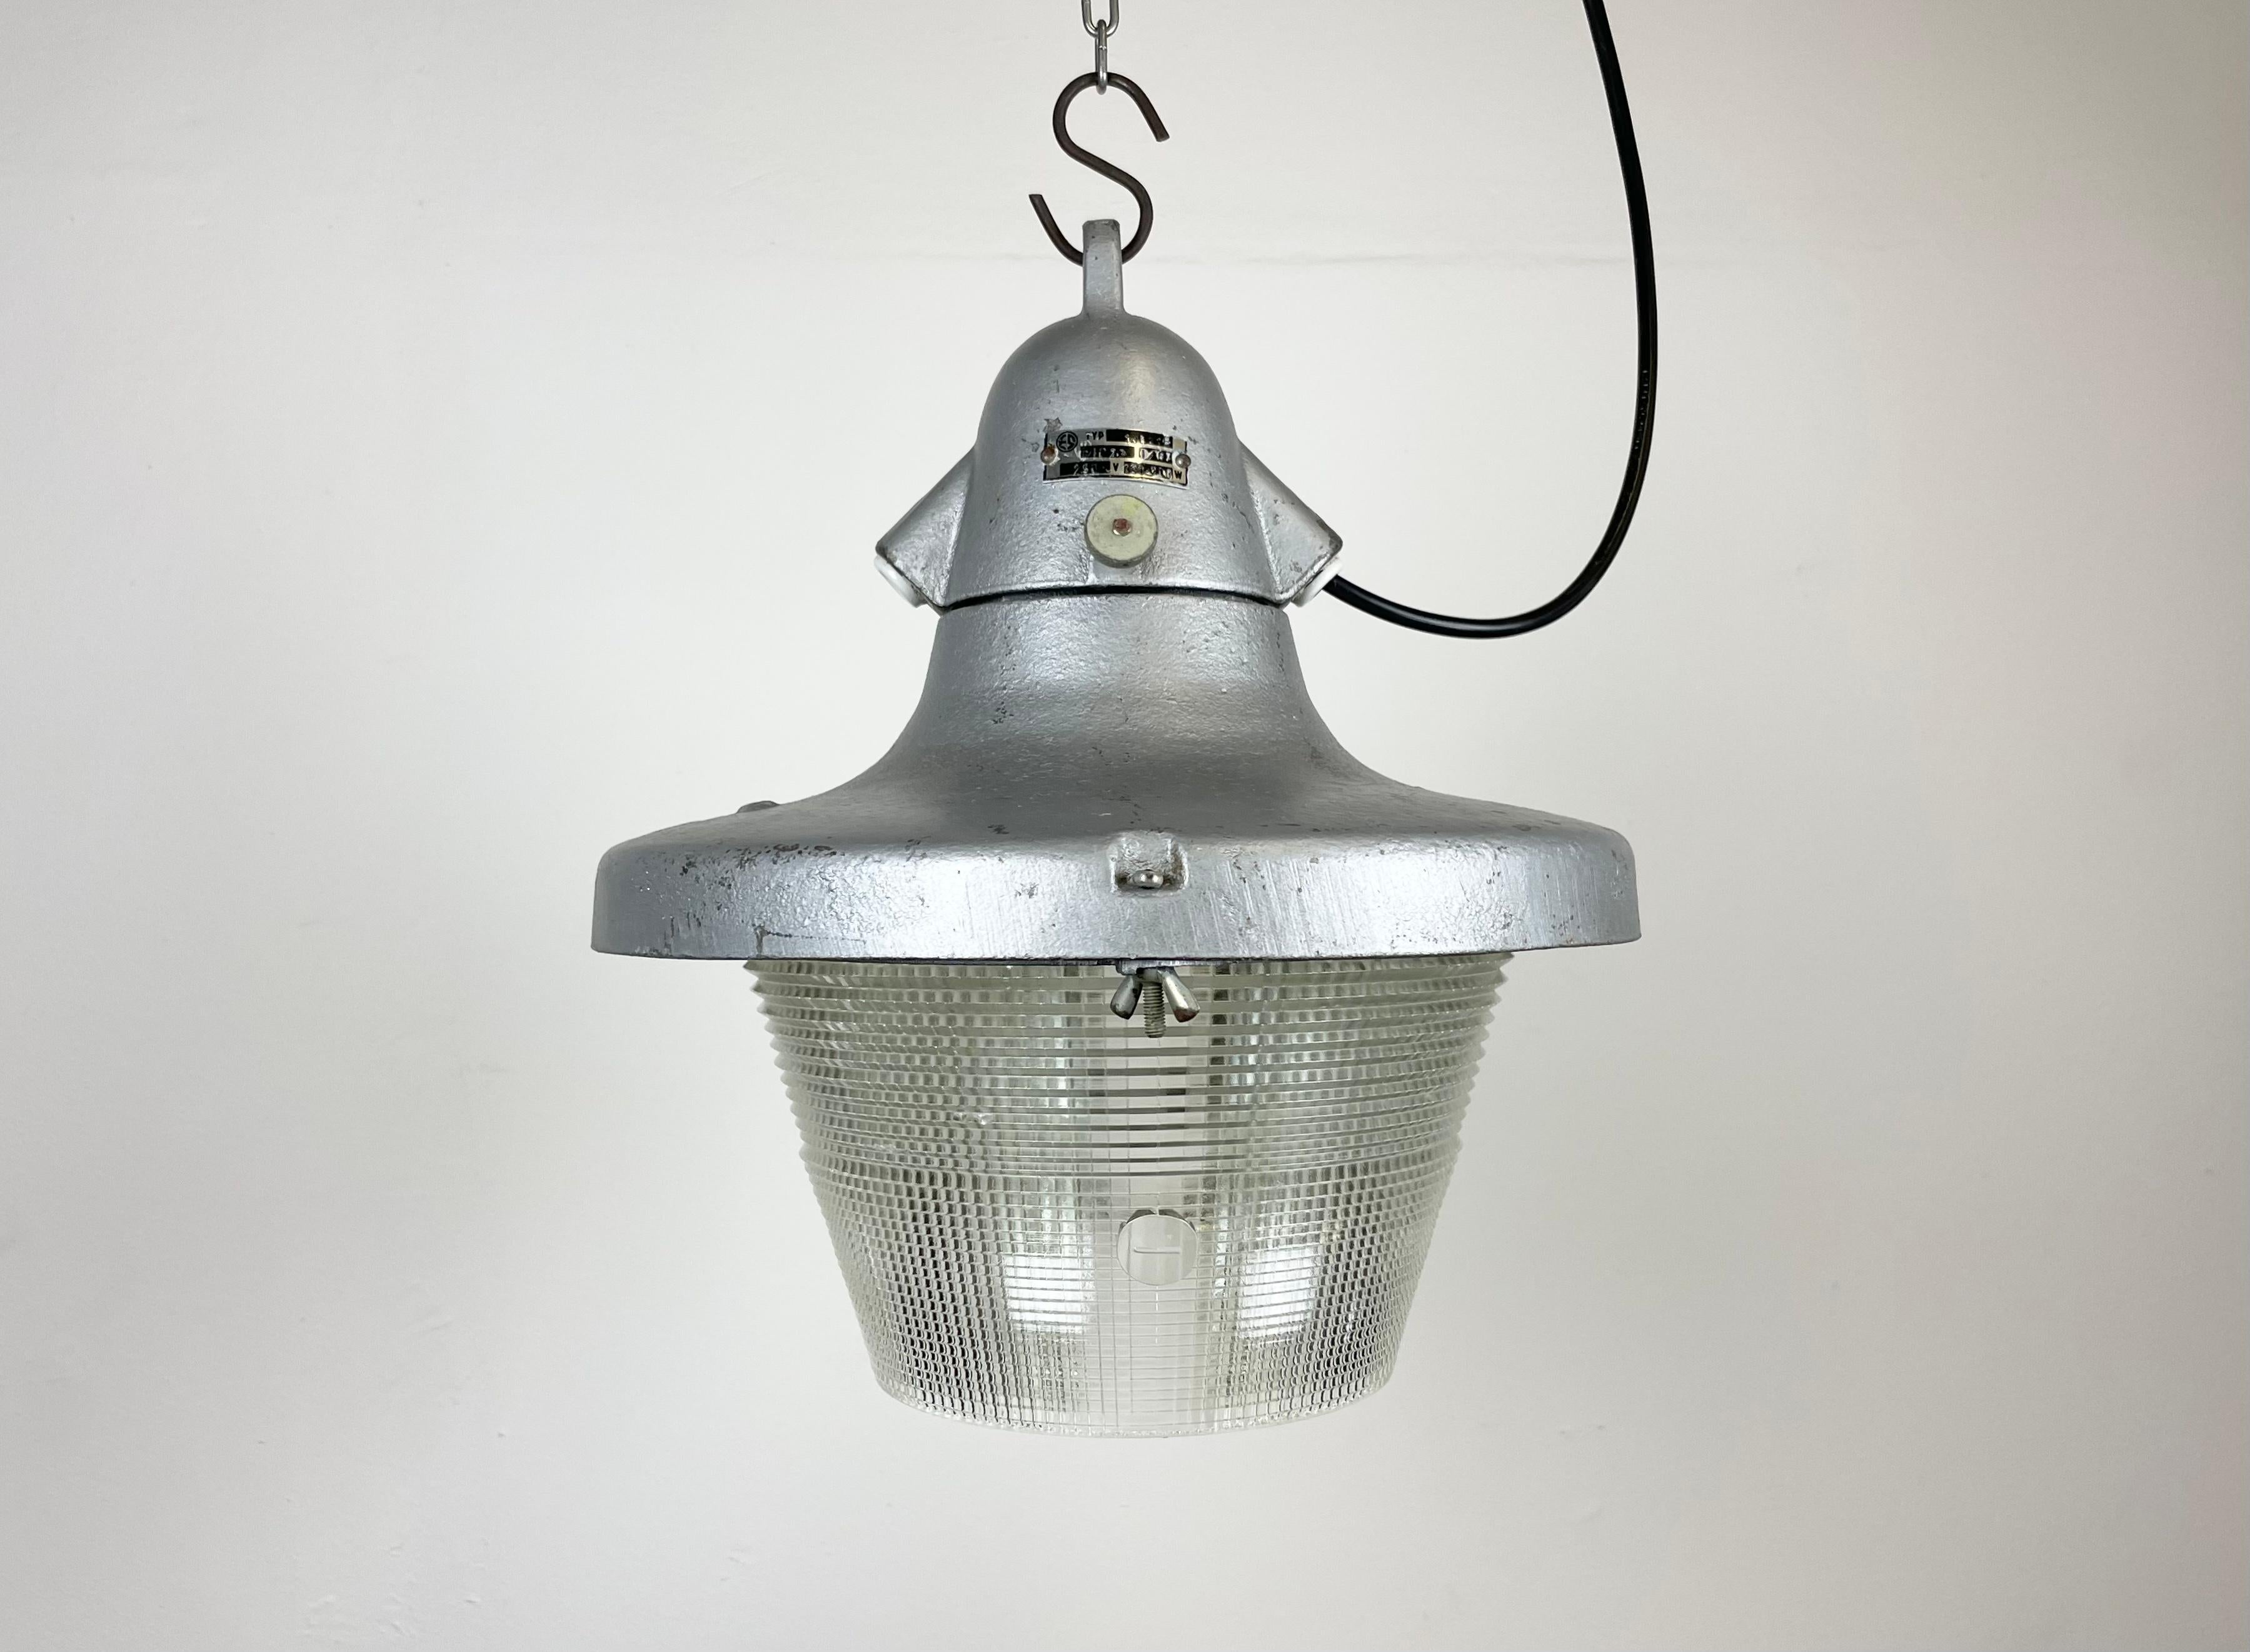 Lampe industrielle fabriquée par Elektrosvit dans l'ancienne Tchécoslovaquie au cours des années 1950. Il se compose d'un corps en fonte d'aluminium et d'un couvercle en verre rayé.
La douille en porcelaine est compatible avec les ampoules standard